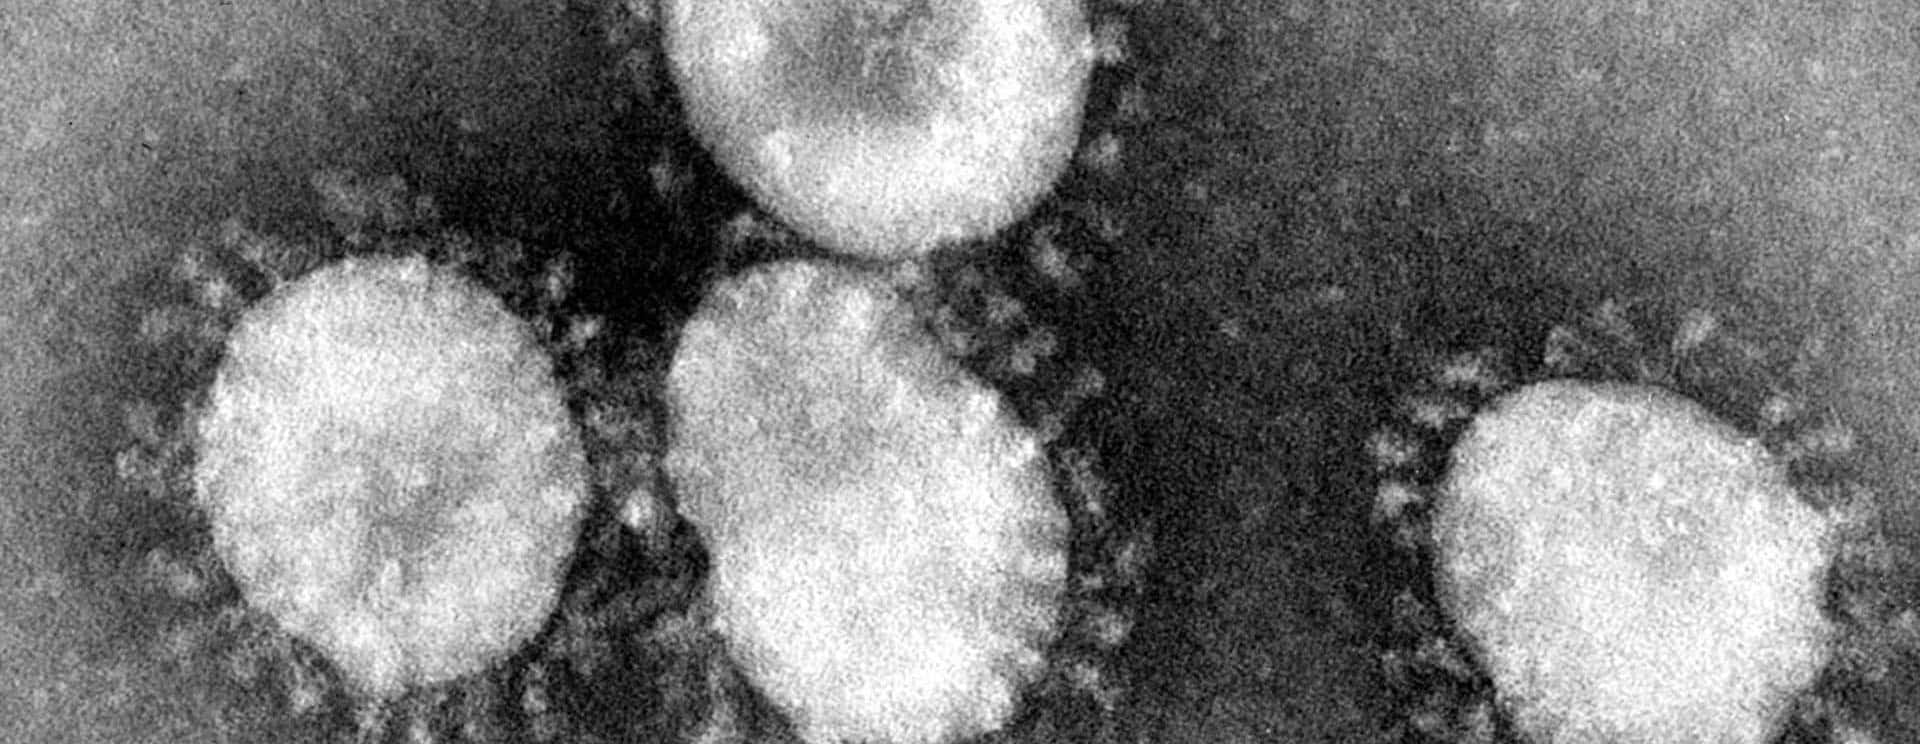 coronaviruses-jpg-23